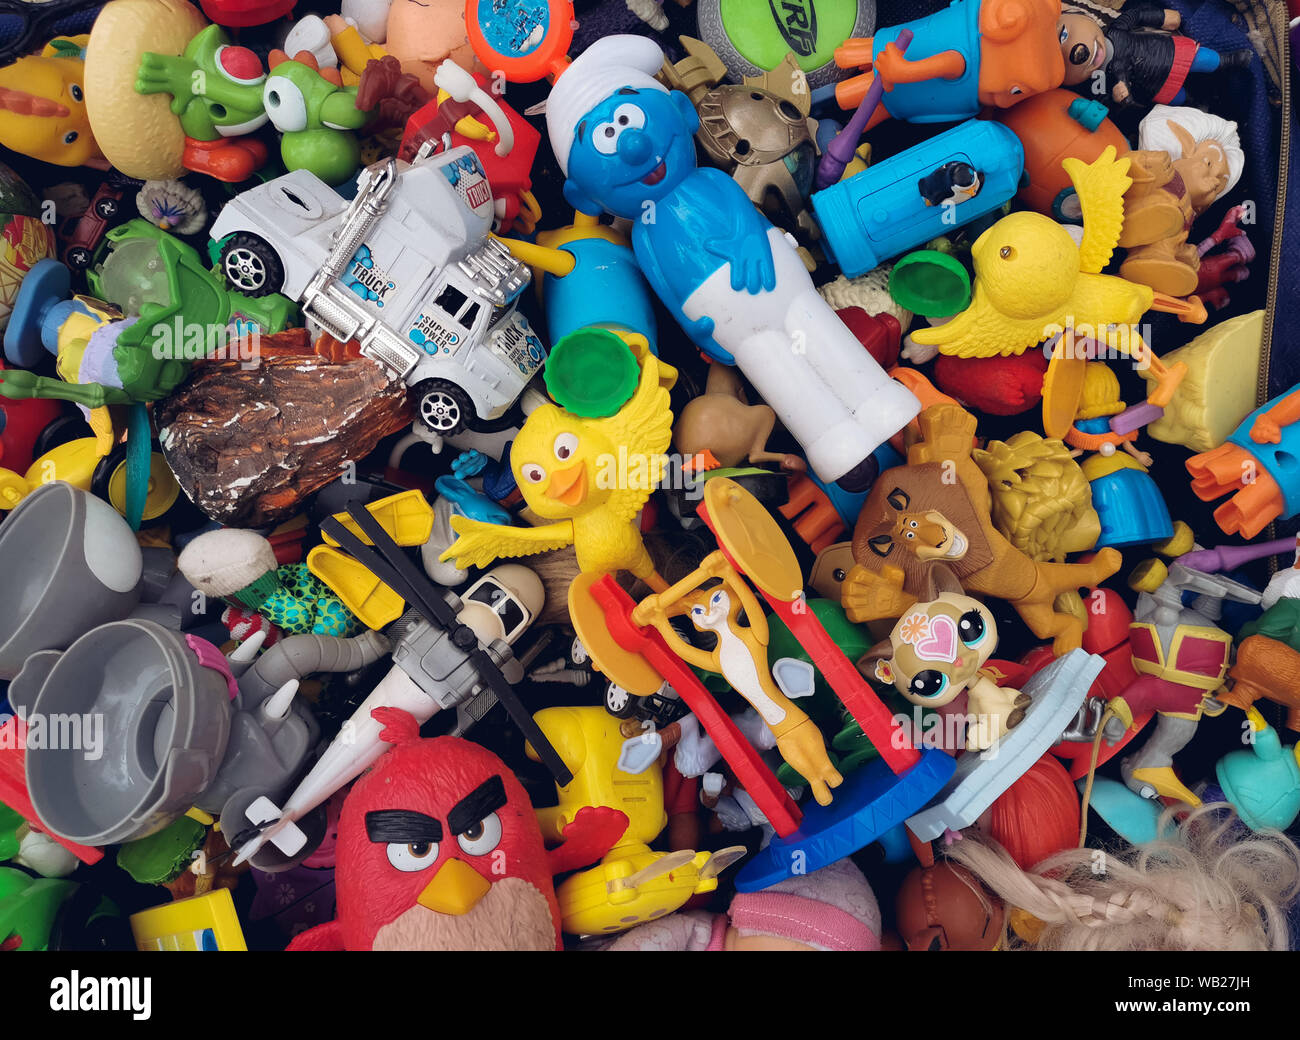 Vecchi giocattoli immagini e fotografie stock ad alta risoluzione - Alamy